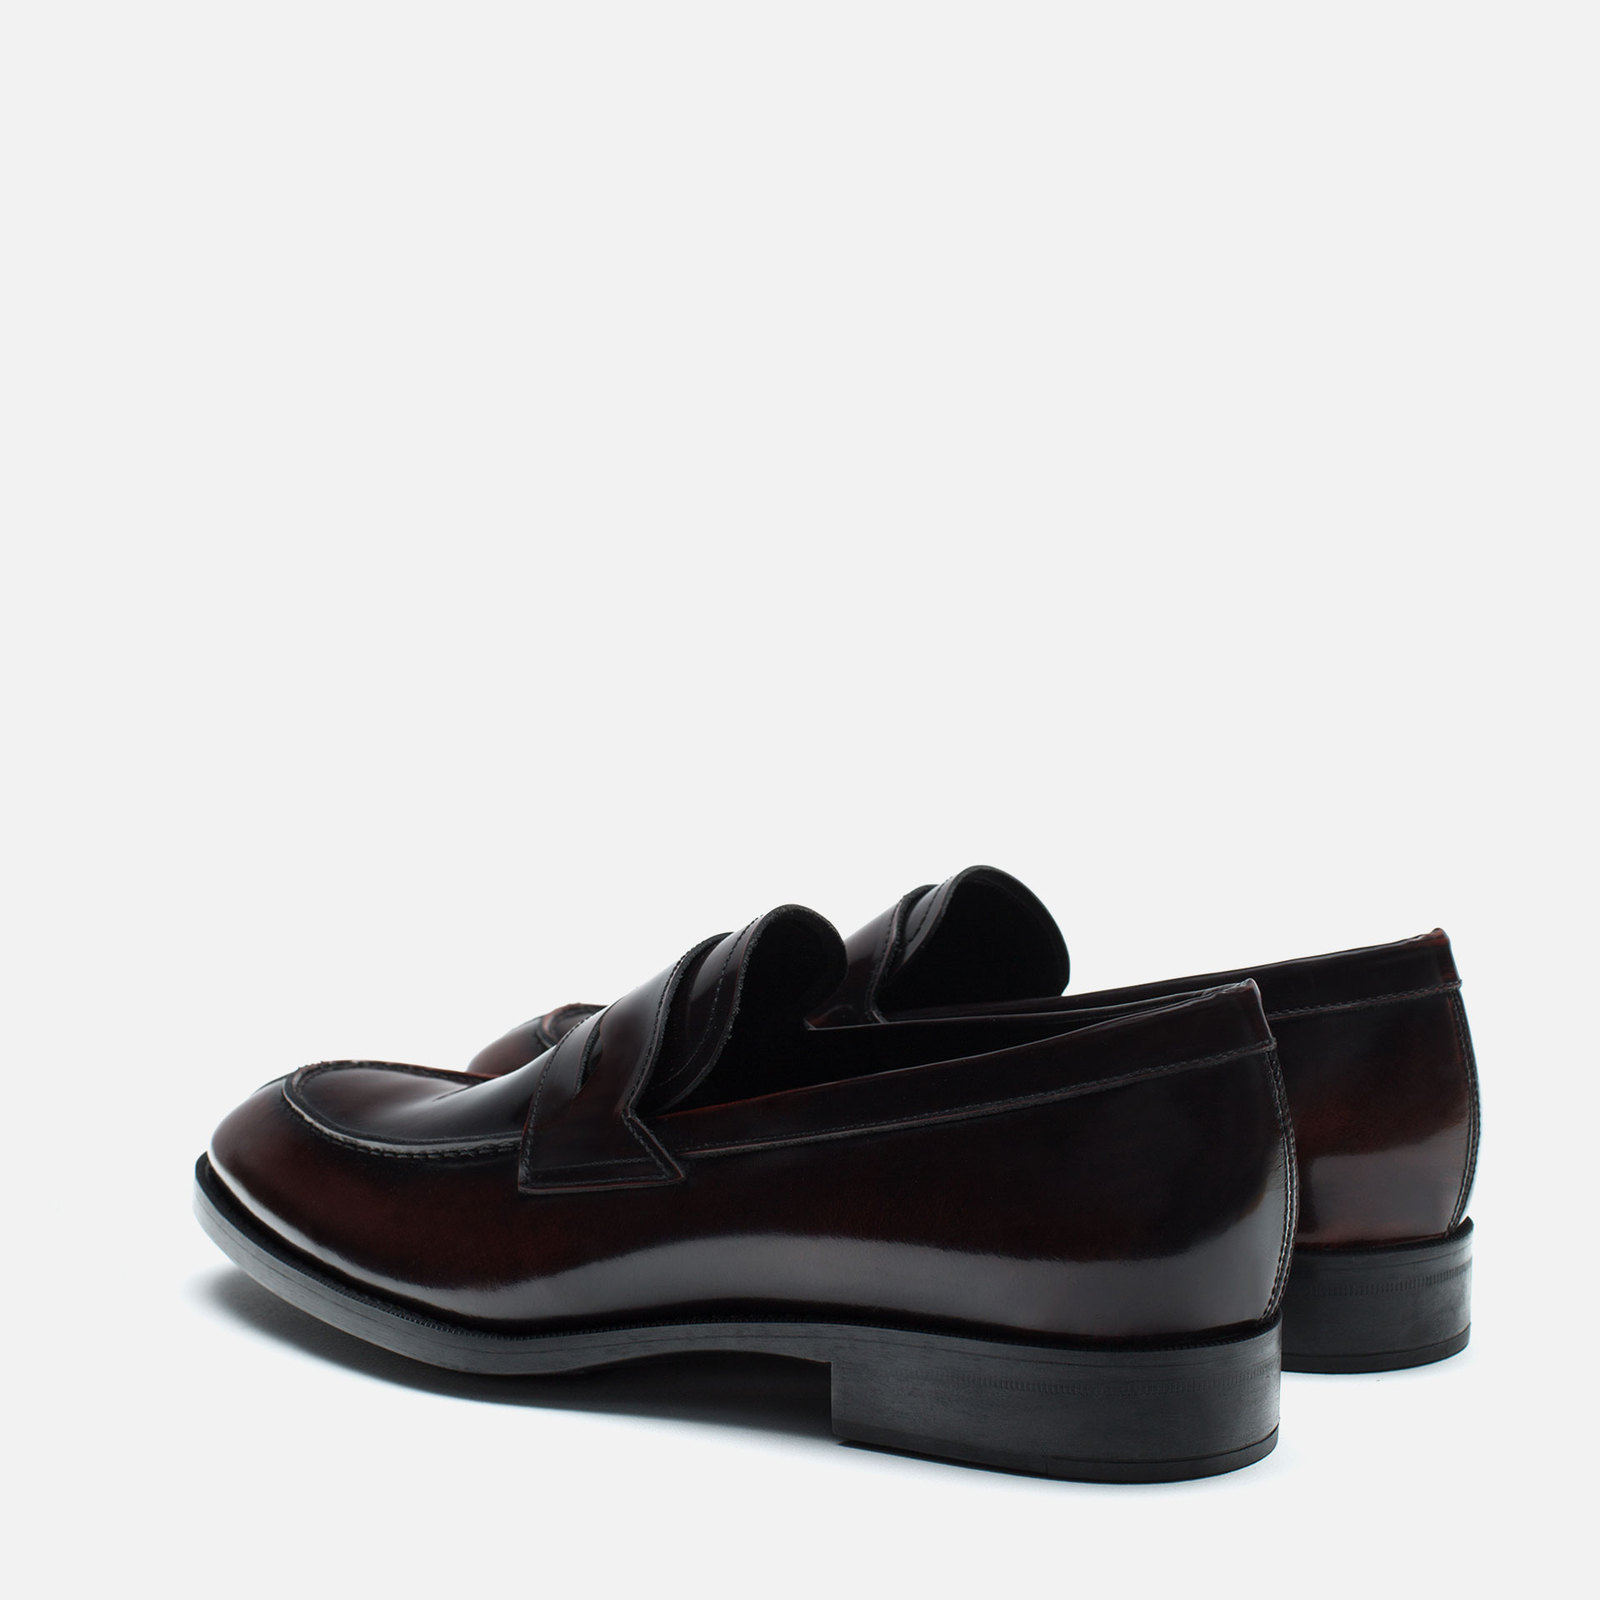 Zara antik hatású bőr loafer cipő 2015.10.15 fotója